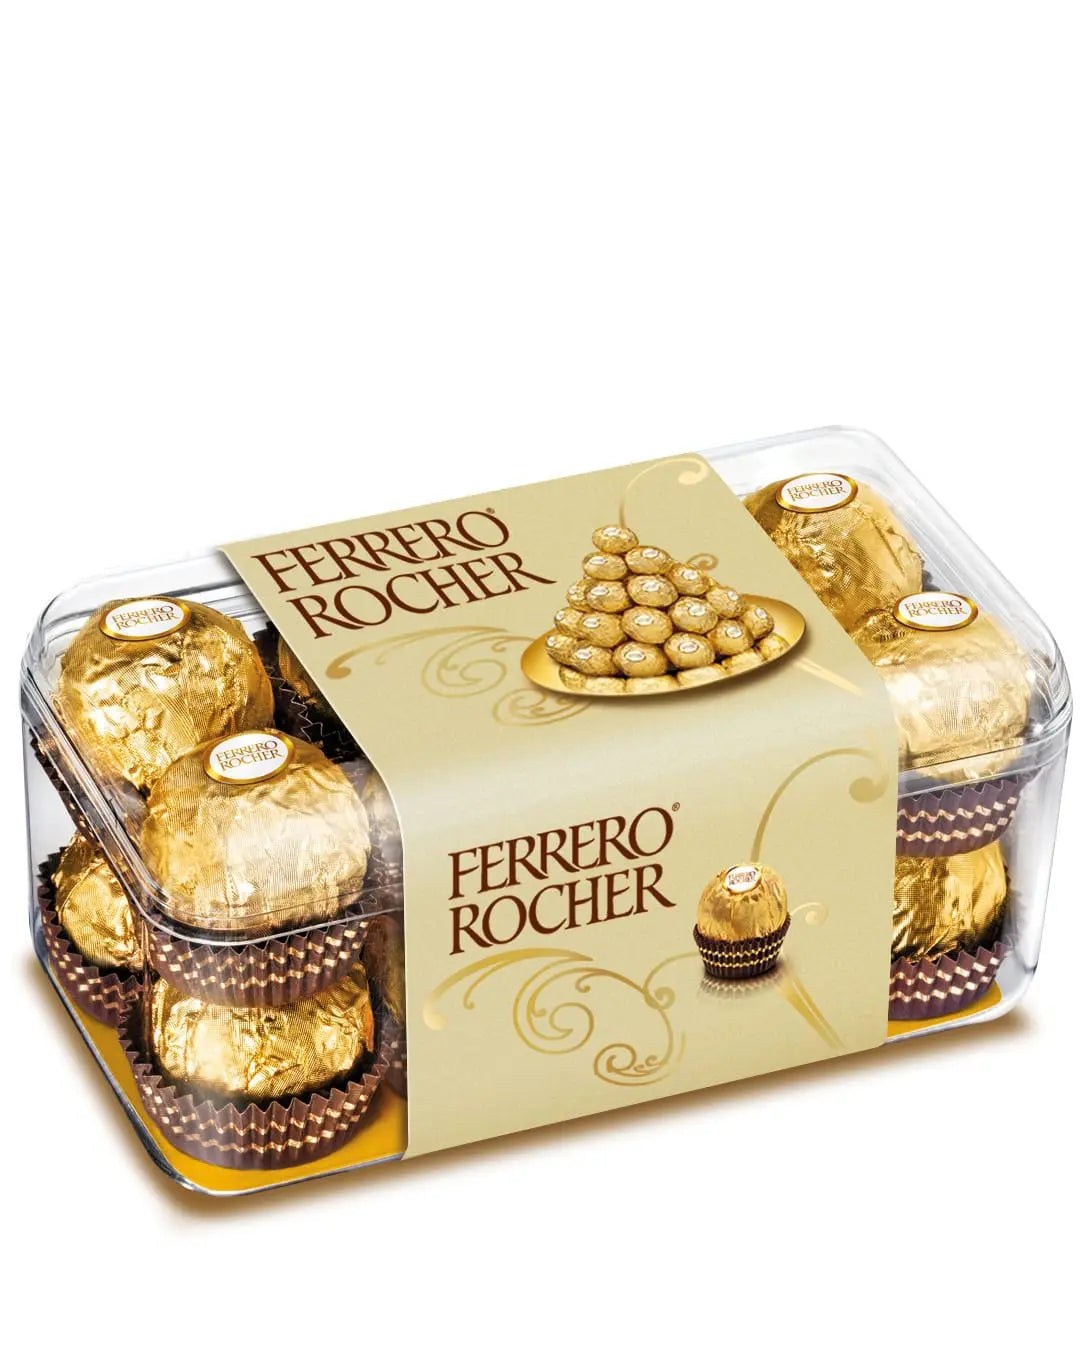 Ferrero Rocher T16 Box, 200 g Chocolate